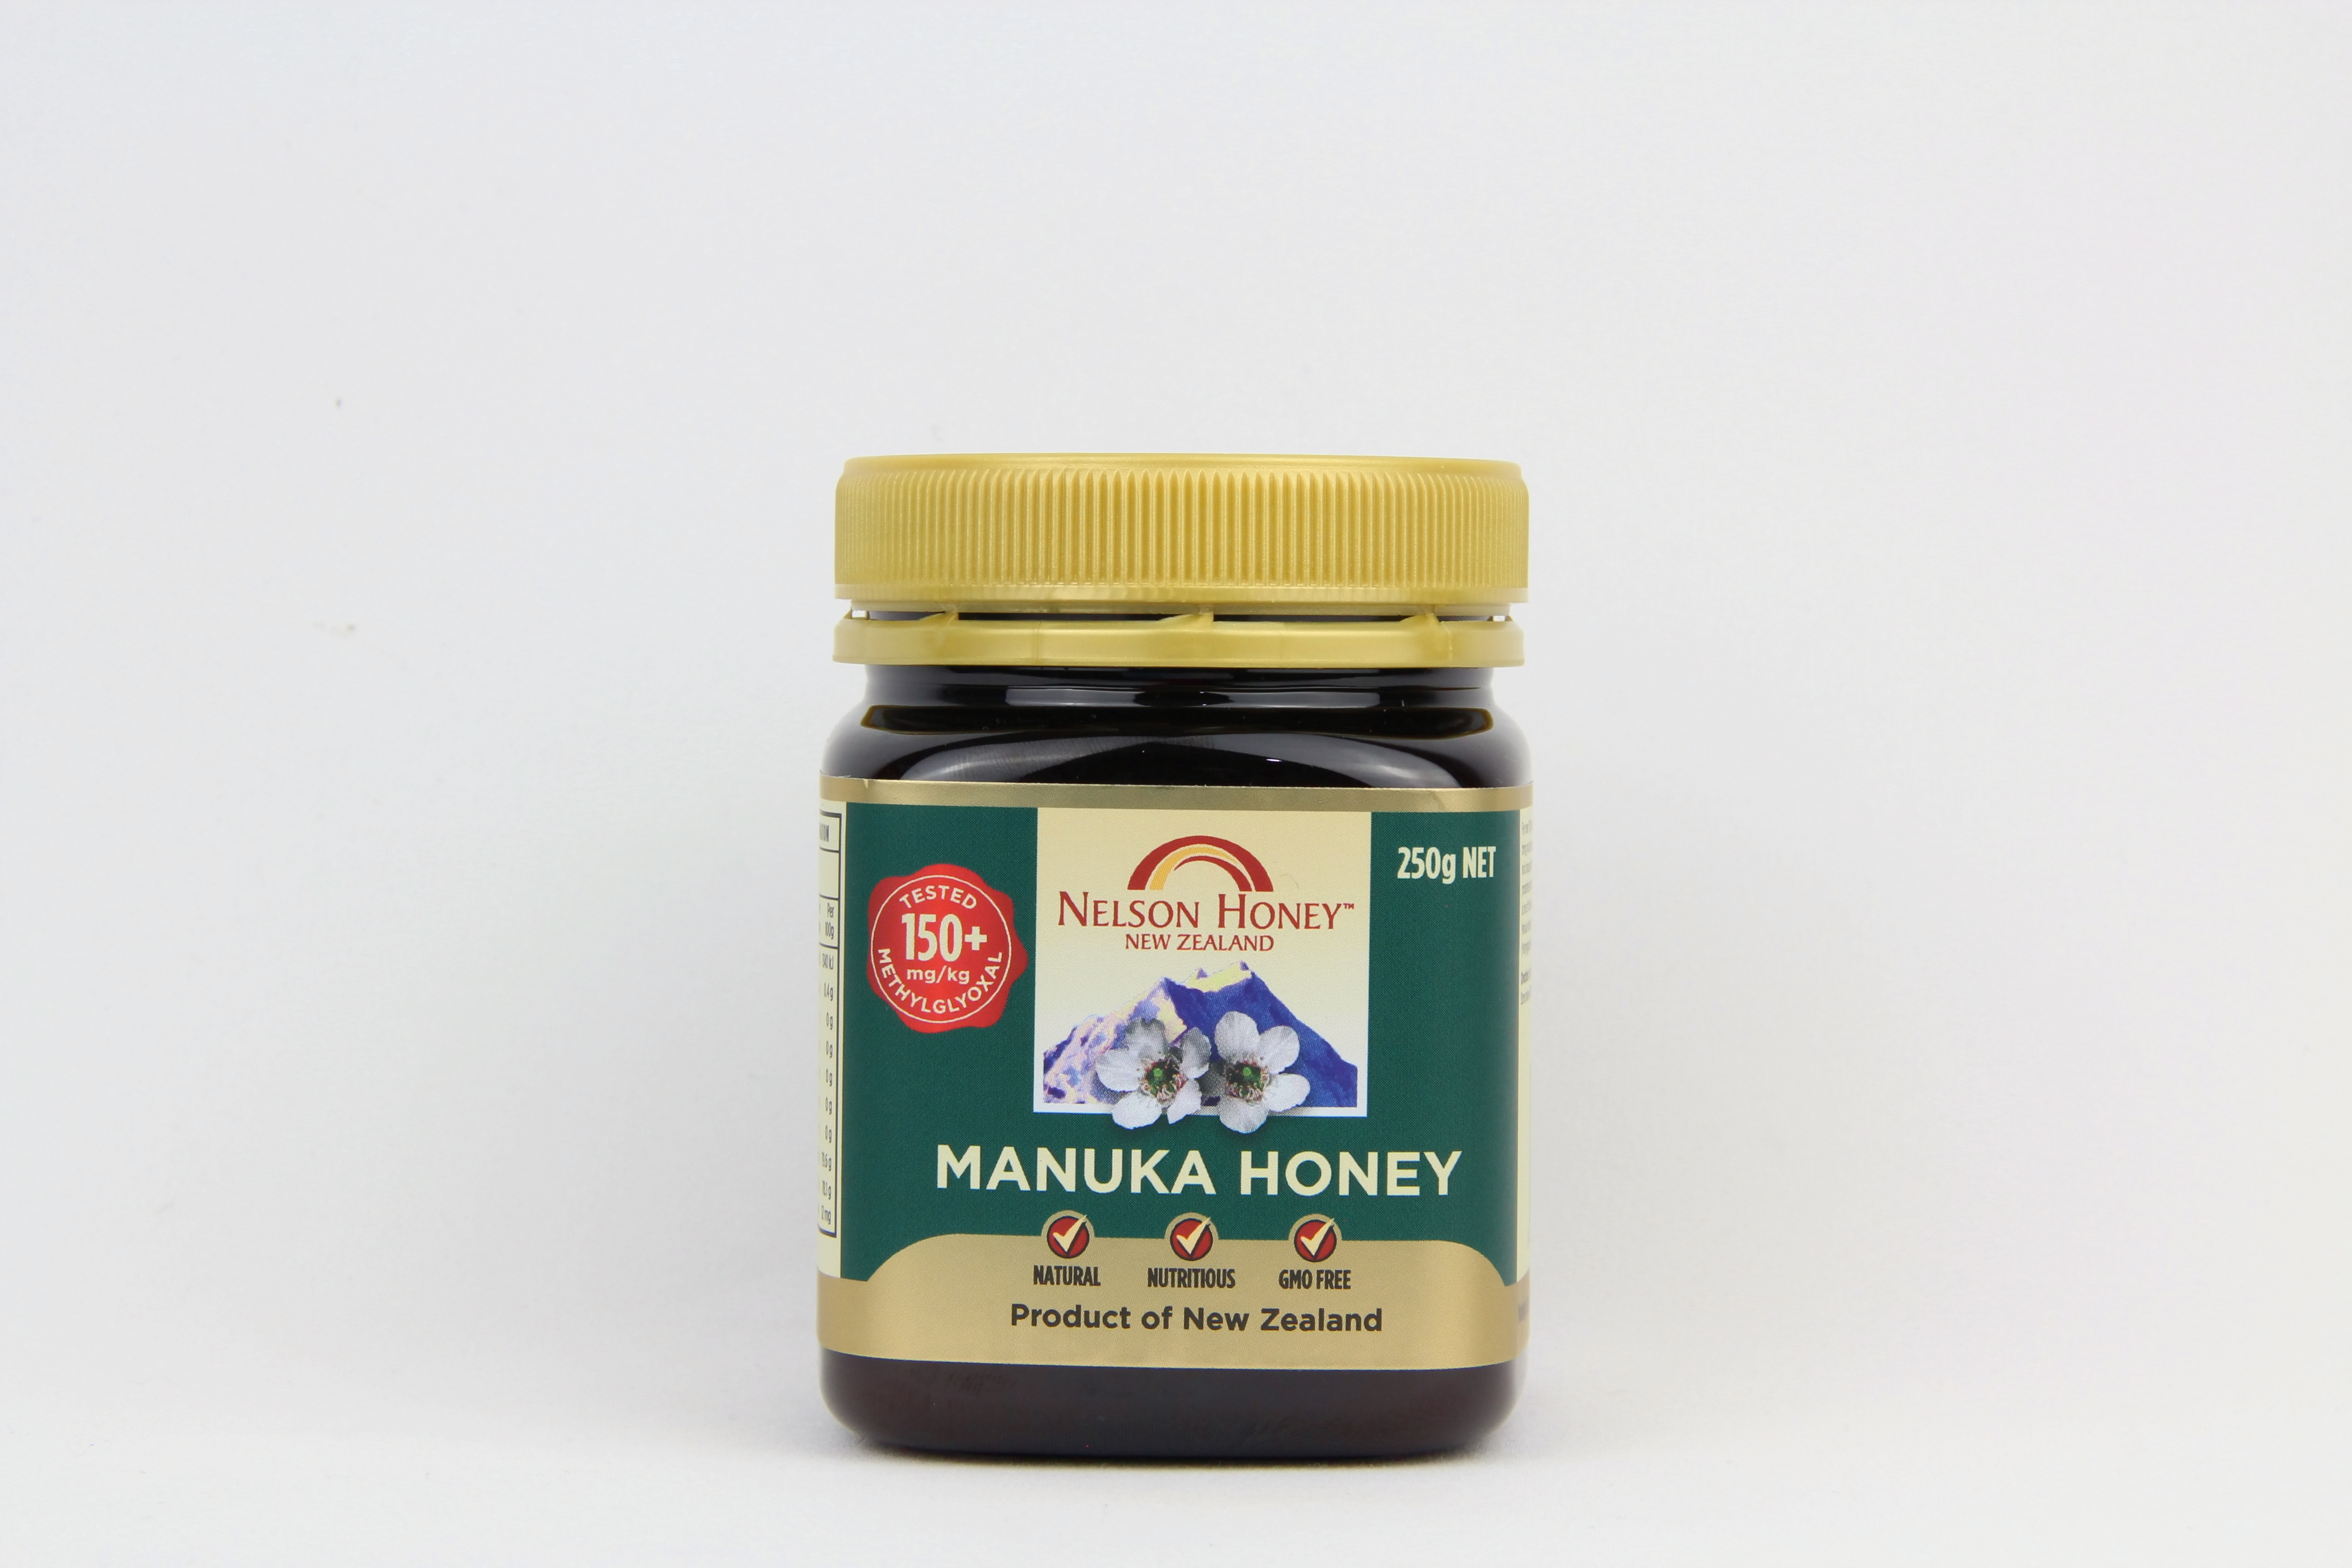 Nelson Honey New Zealand Manuka Honey 150+ 250gm 